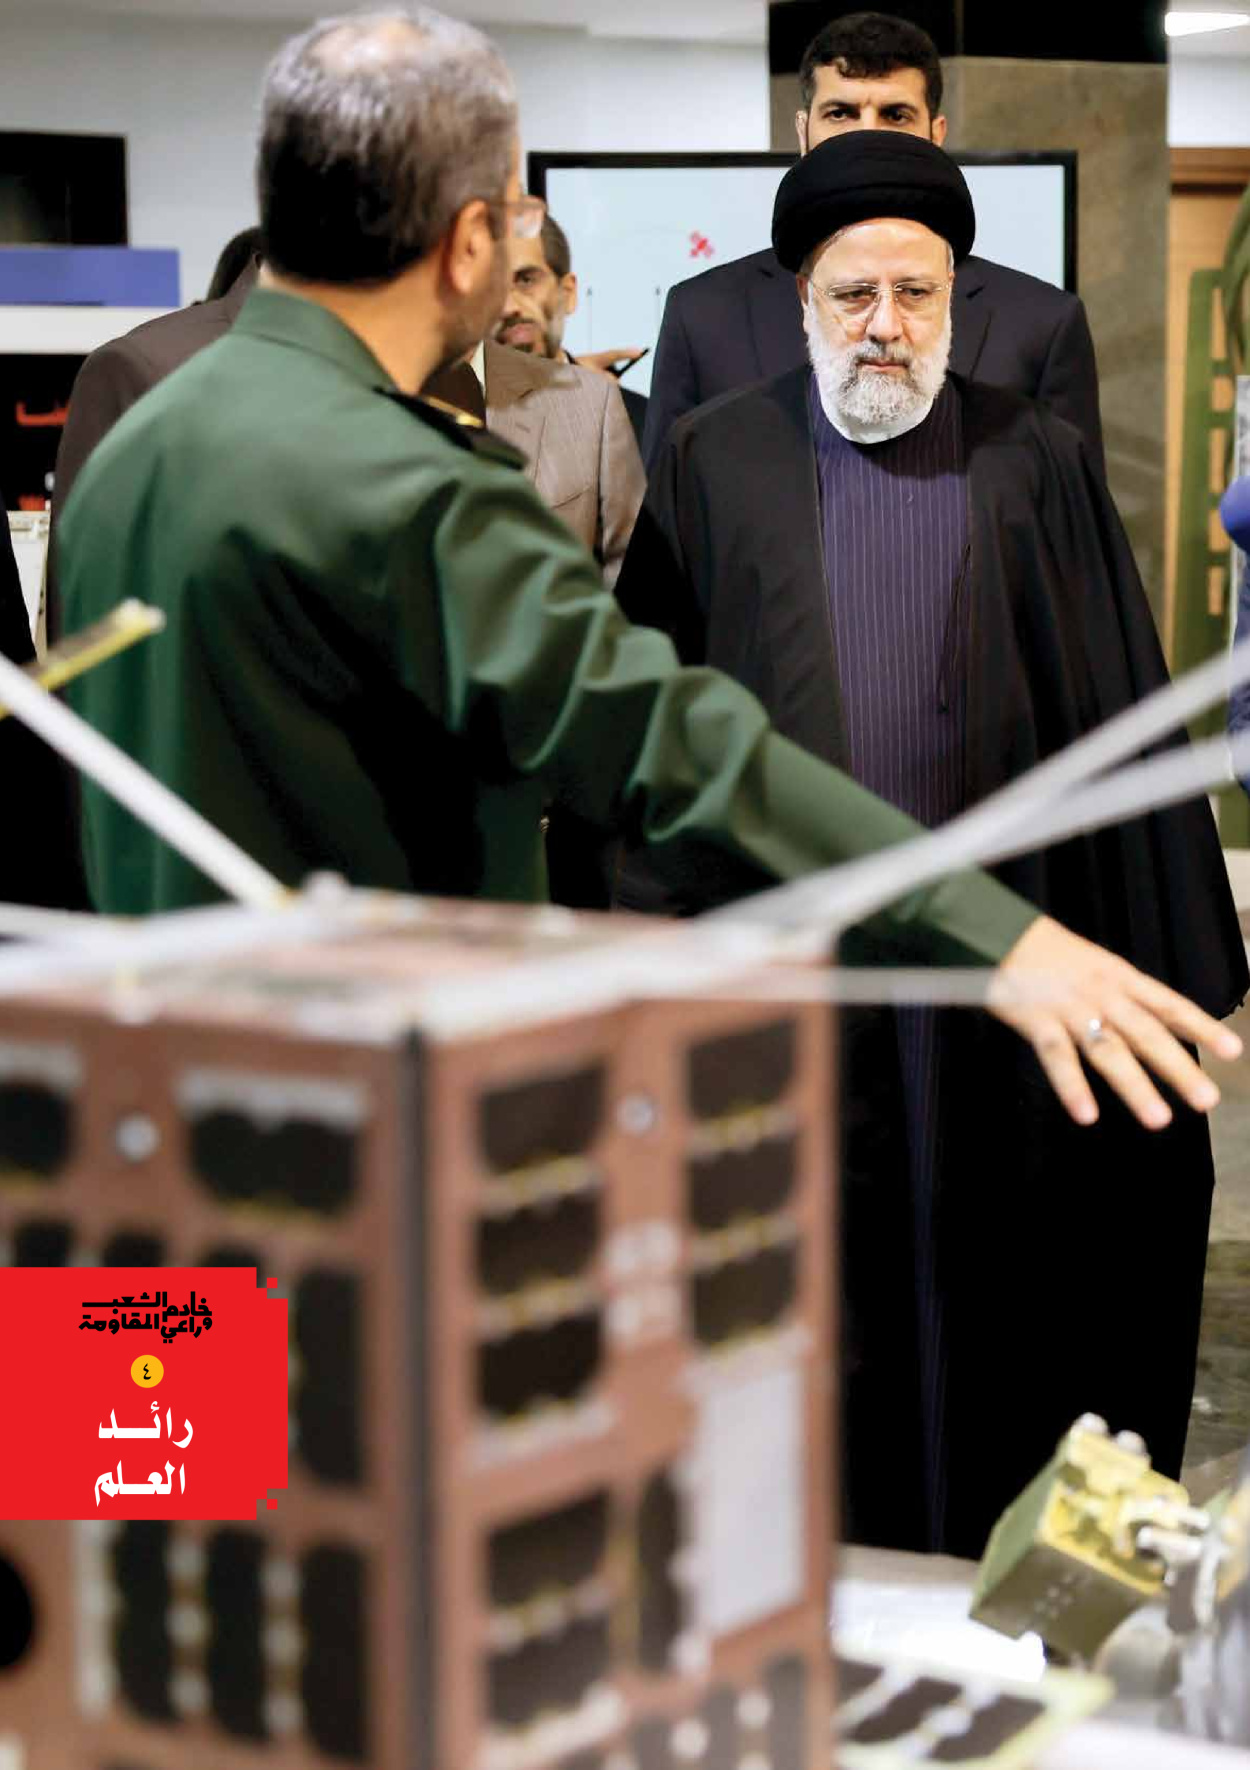 صحیفة ایران الدولیة الوفاق - ملحق ویژه نامه چهلم شهید رییسی - ٢٩ يونيو ٢٠٢٤ - الصفحة ٥۷